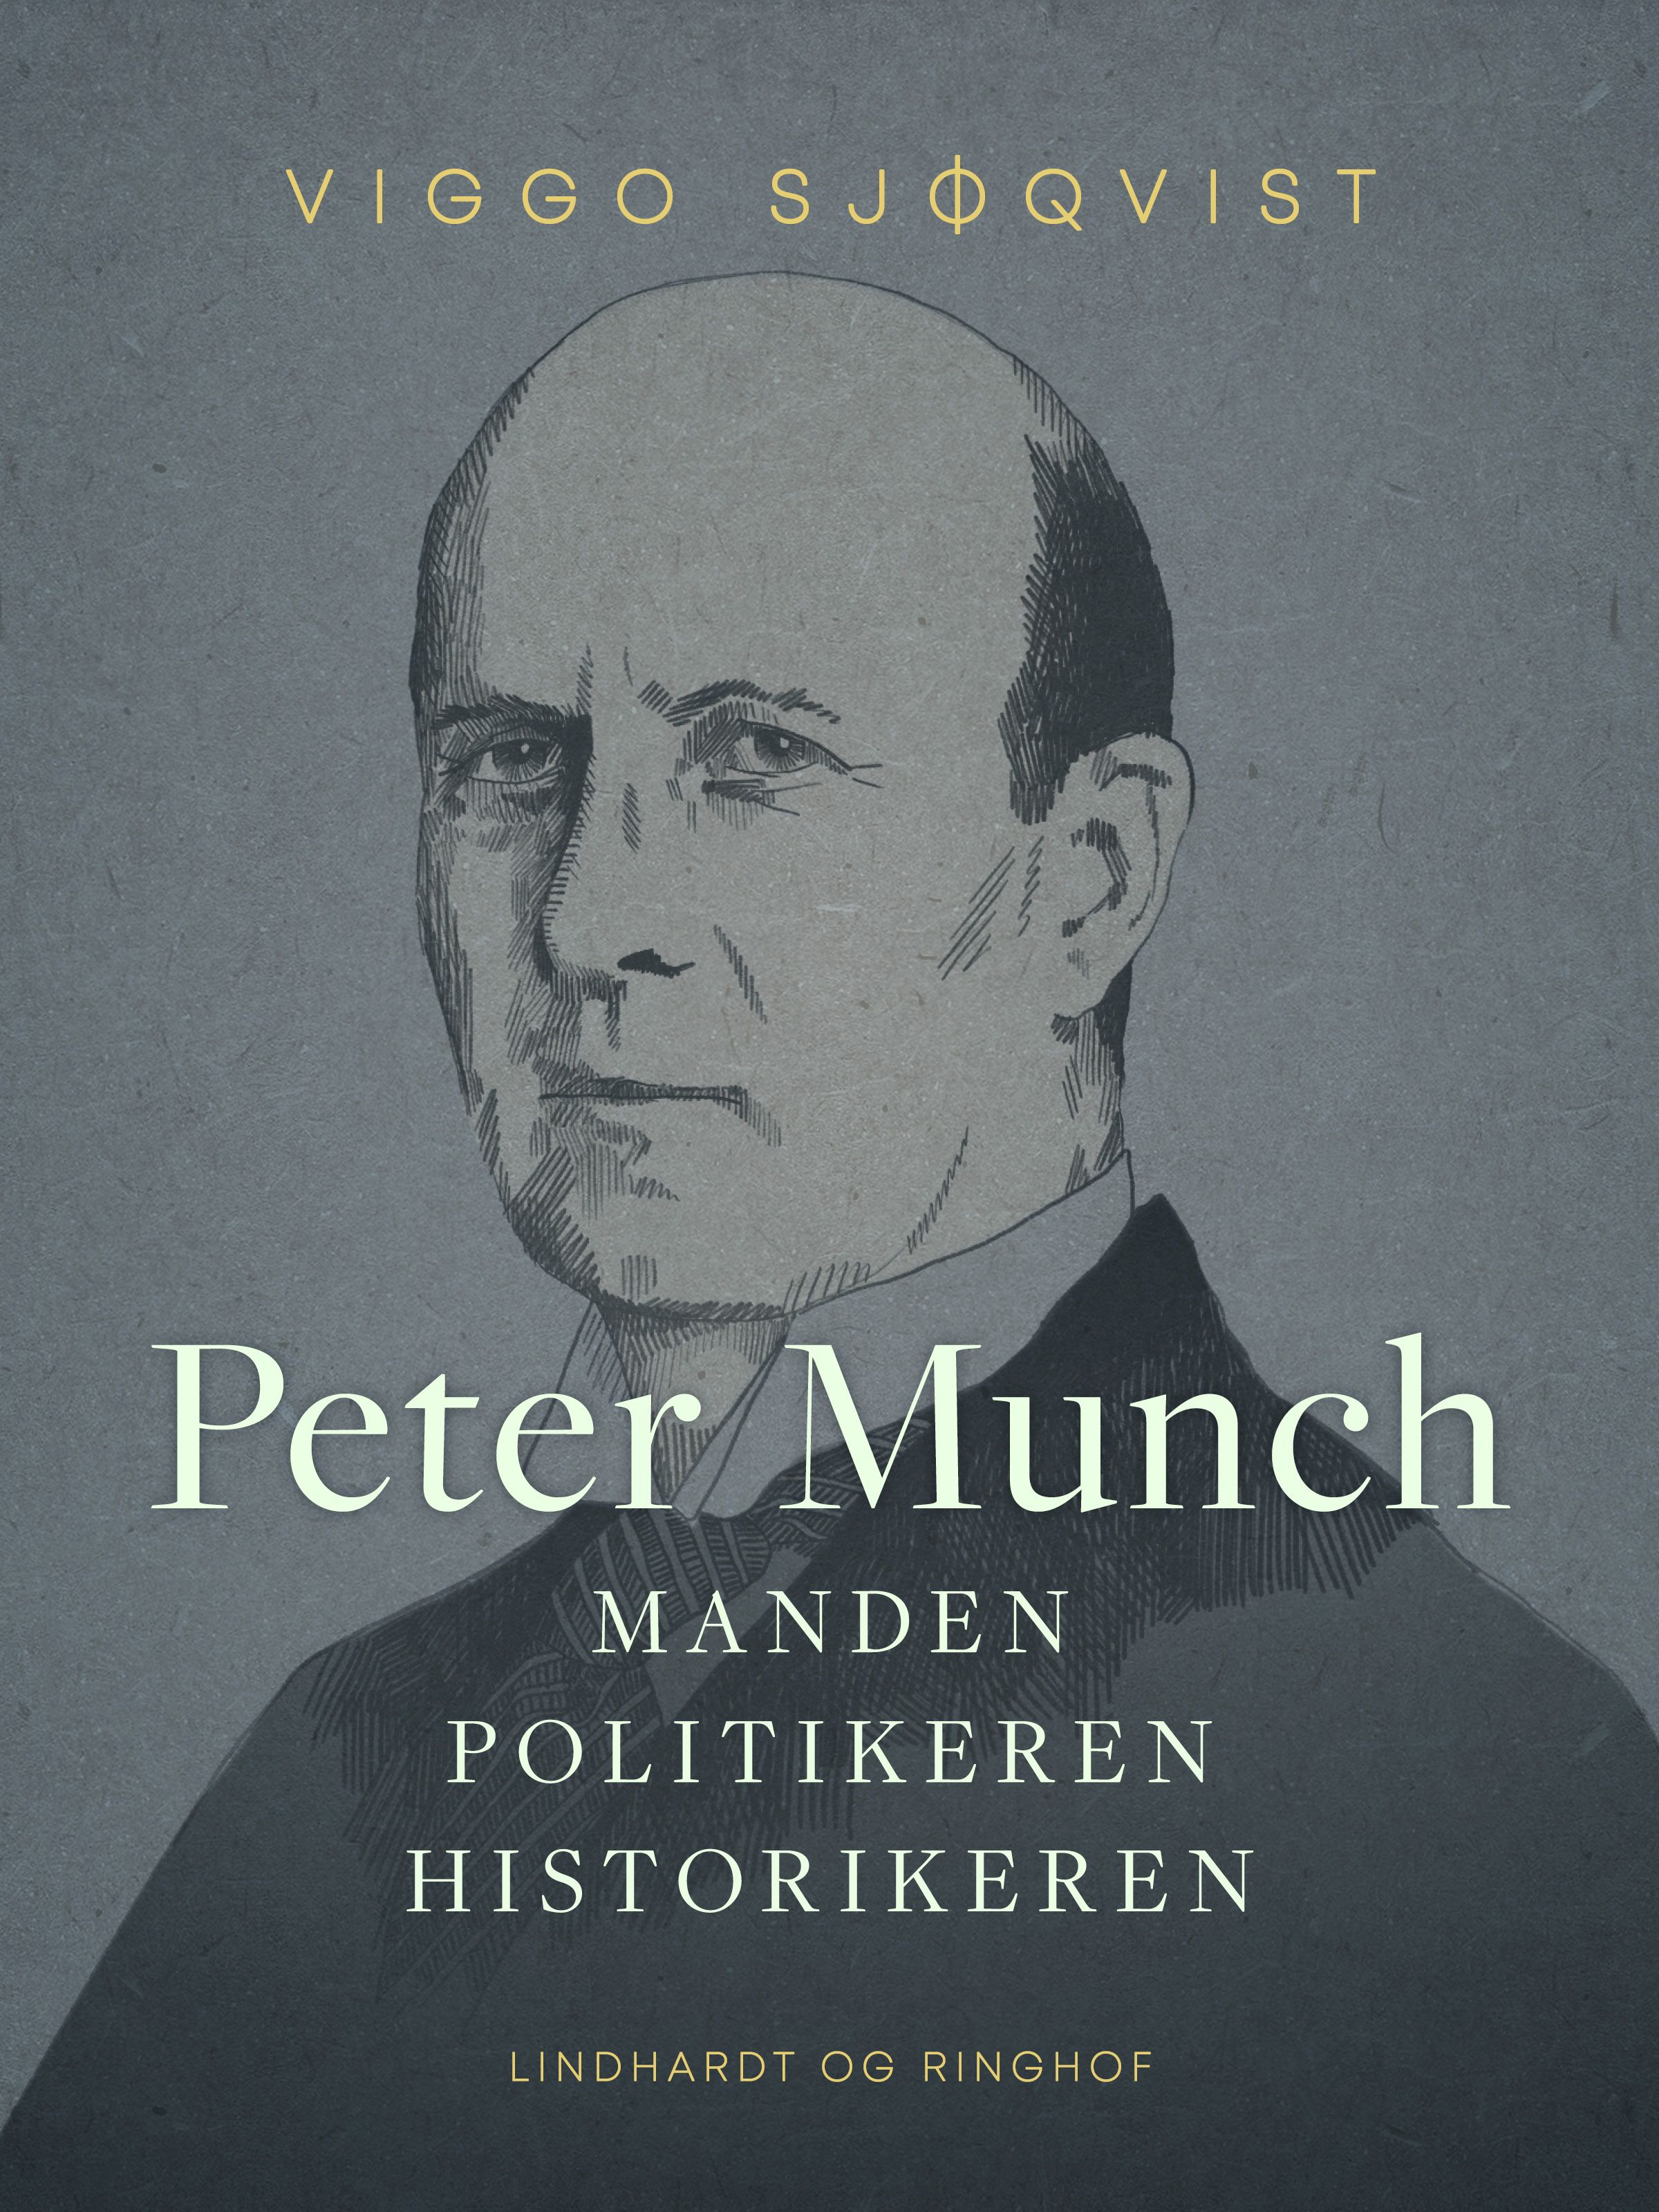 Peter Munch. Manden, politikeren, historikeren, eBook by Viggo Sjøqvist